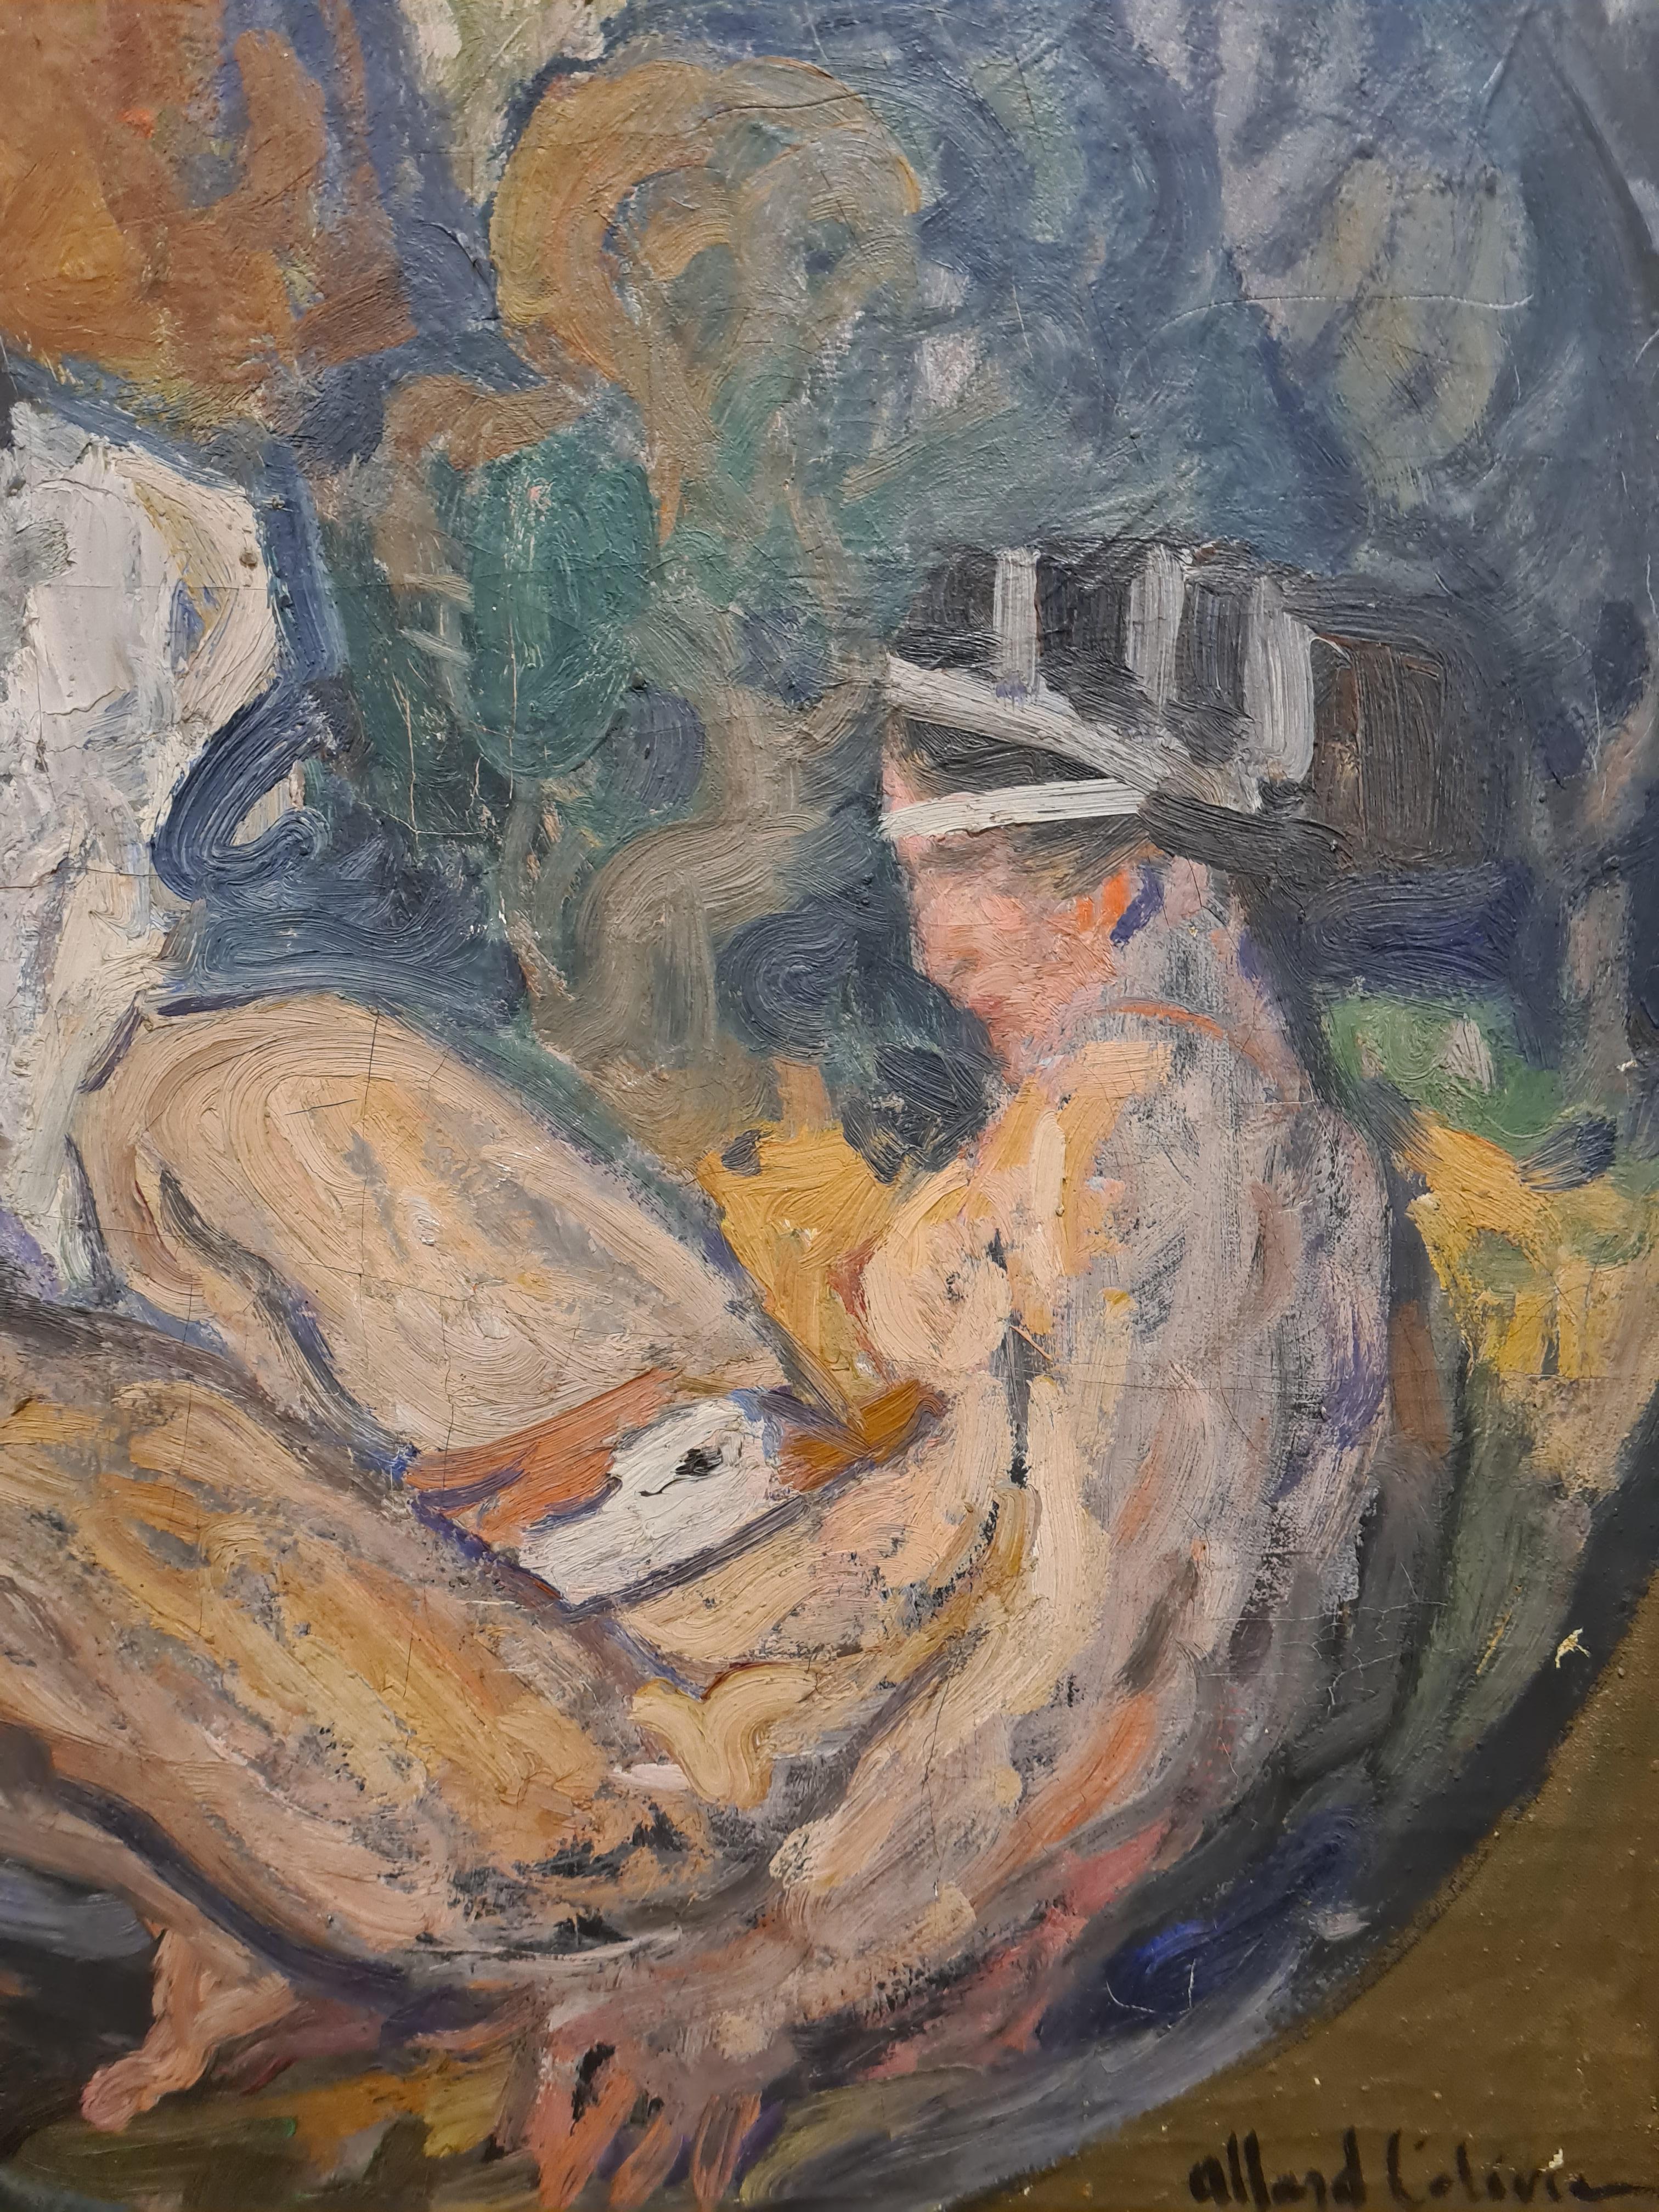 Ein allegorisches Gemälde von Leda und dem Schwan in Öl auf Leinwand von Fernand Allard l'Olivier aus dem frühen 20. Präsentiert in einem schlichten Holzrahmen.

Leda und der Schwan ist eine Geschichte und ein Thema in der Kunst aus der griechischen